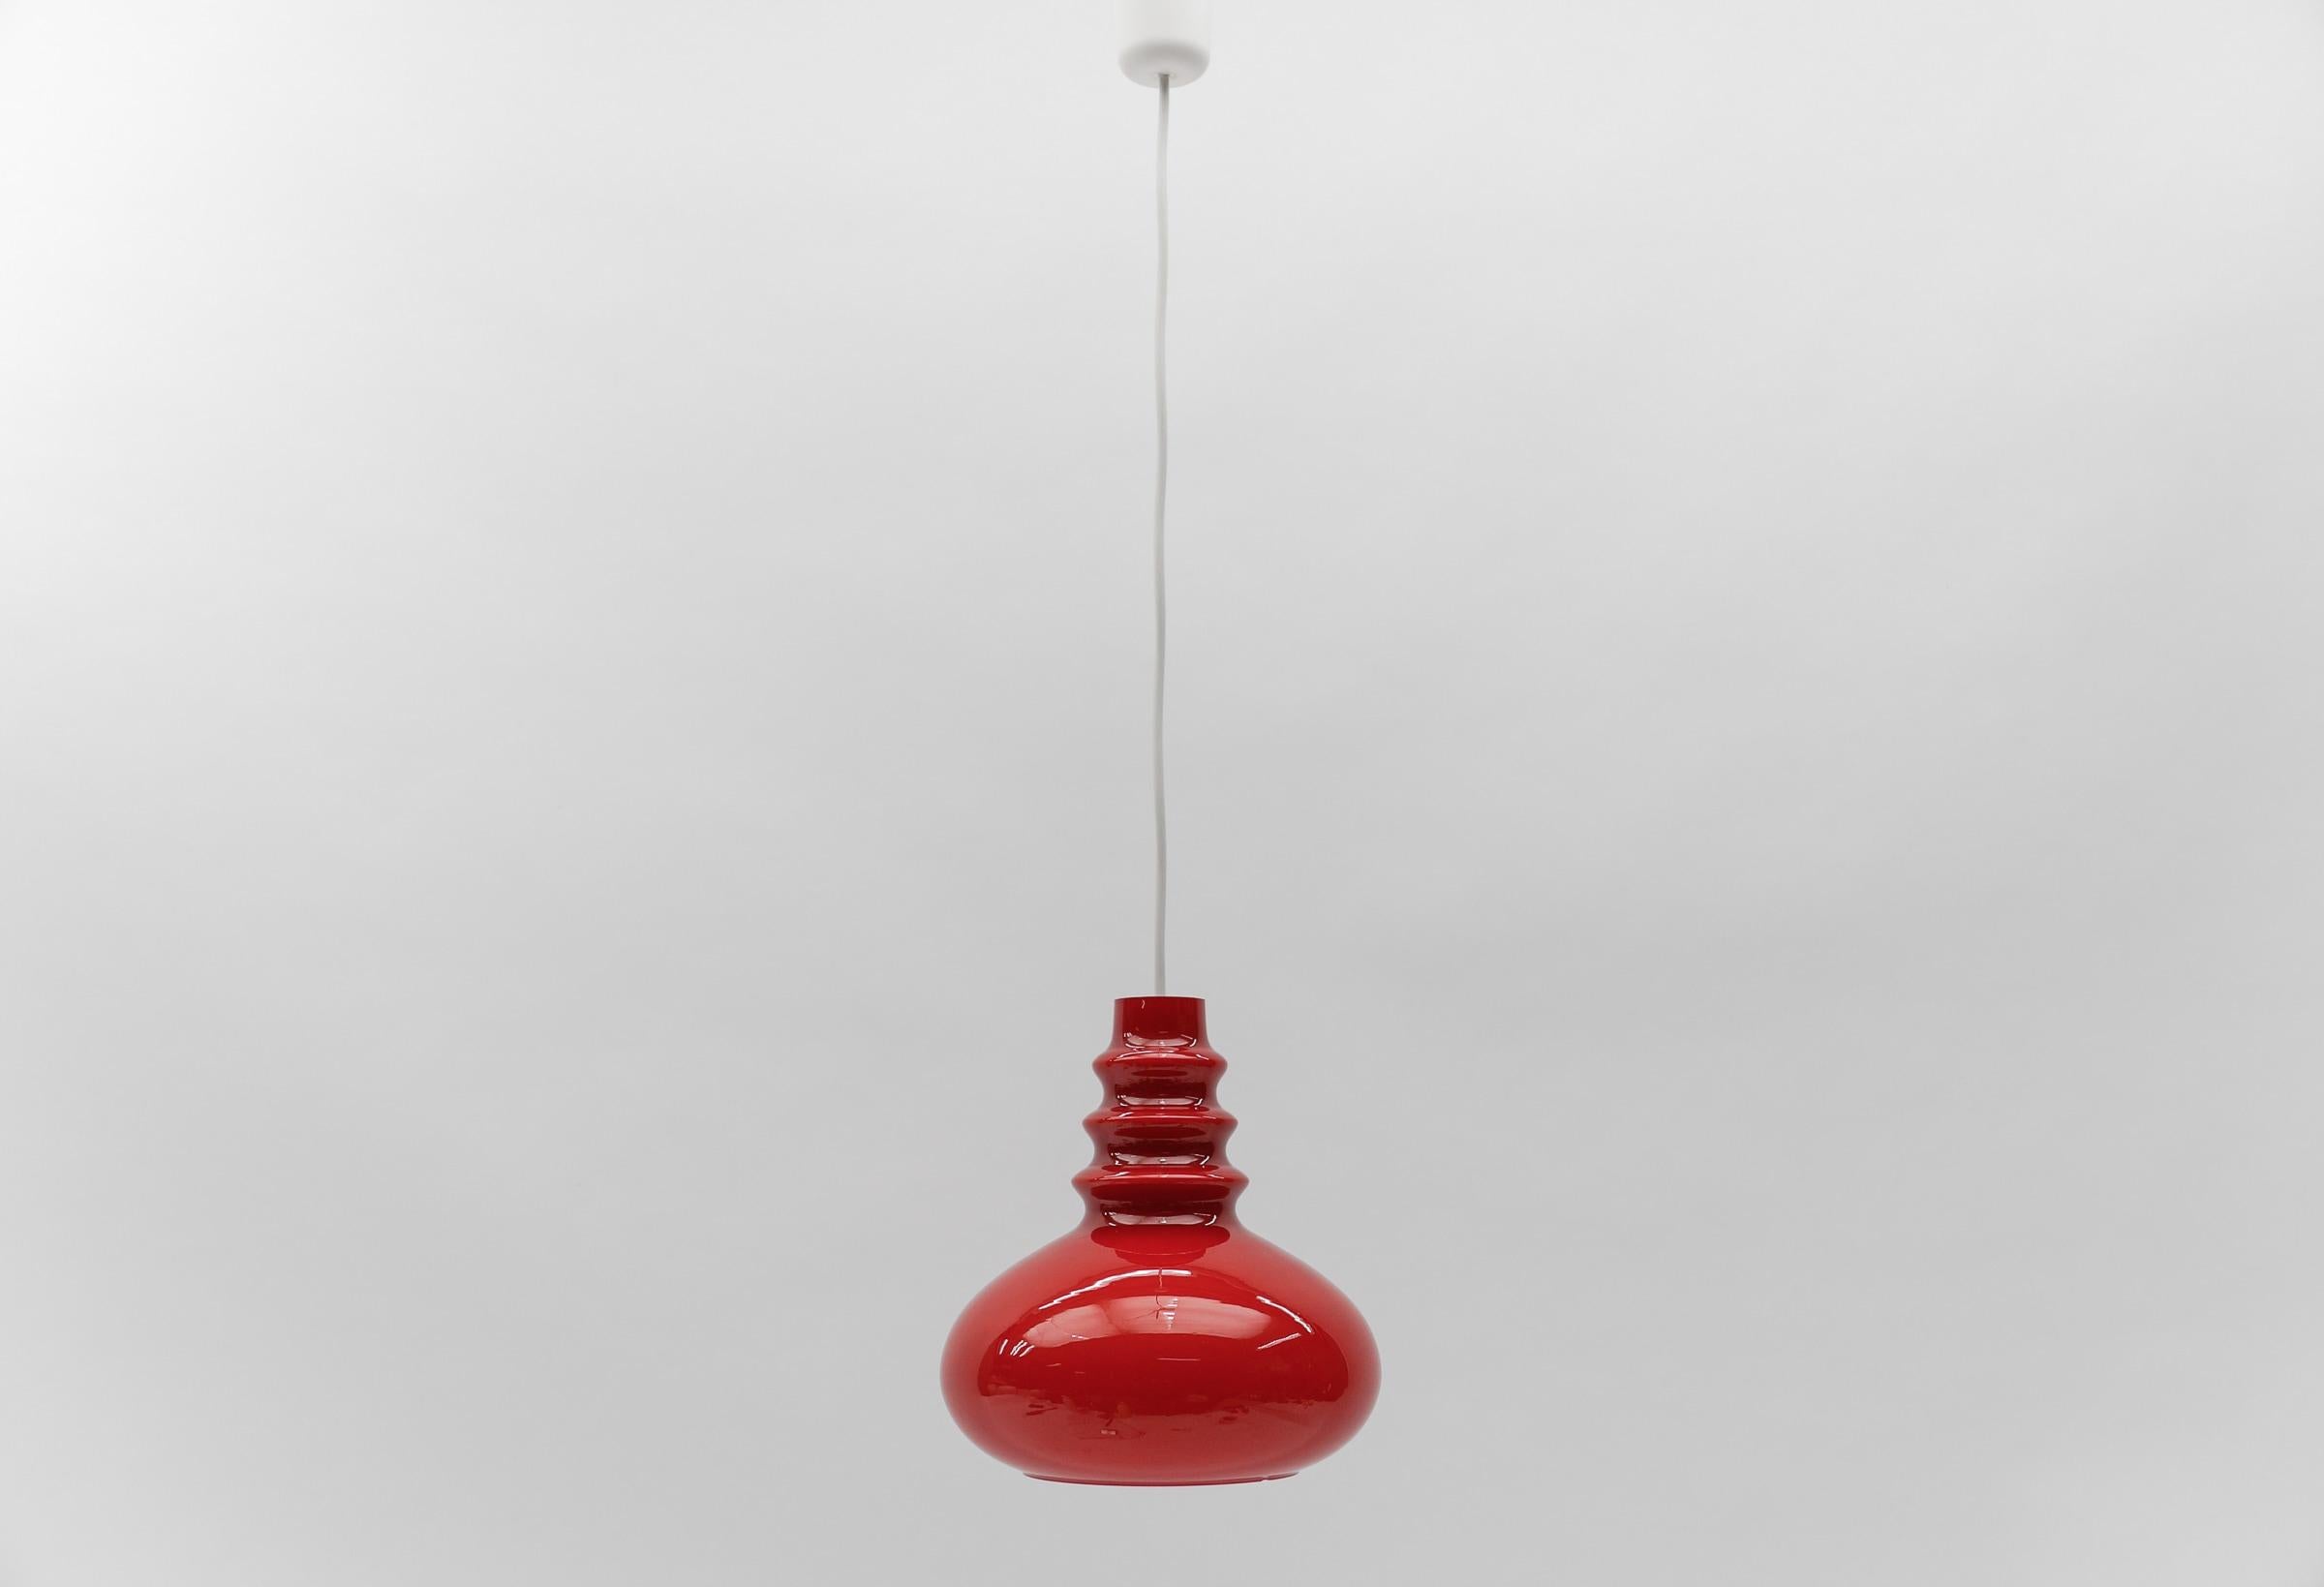 Joli plafonnier en verre rouge-rouge de Peill & Putzler, années 1960

La lampe nécessite une ampoule à vis E27 / E26 Edison, elle est câblée, en état de marche et fonctionne sur 110 / 230 volts.

Les ampoules ne sont pas incluses.

Il est possible